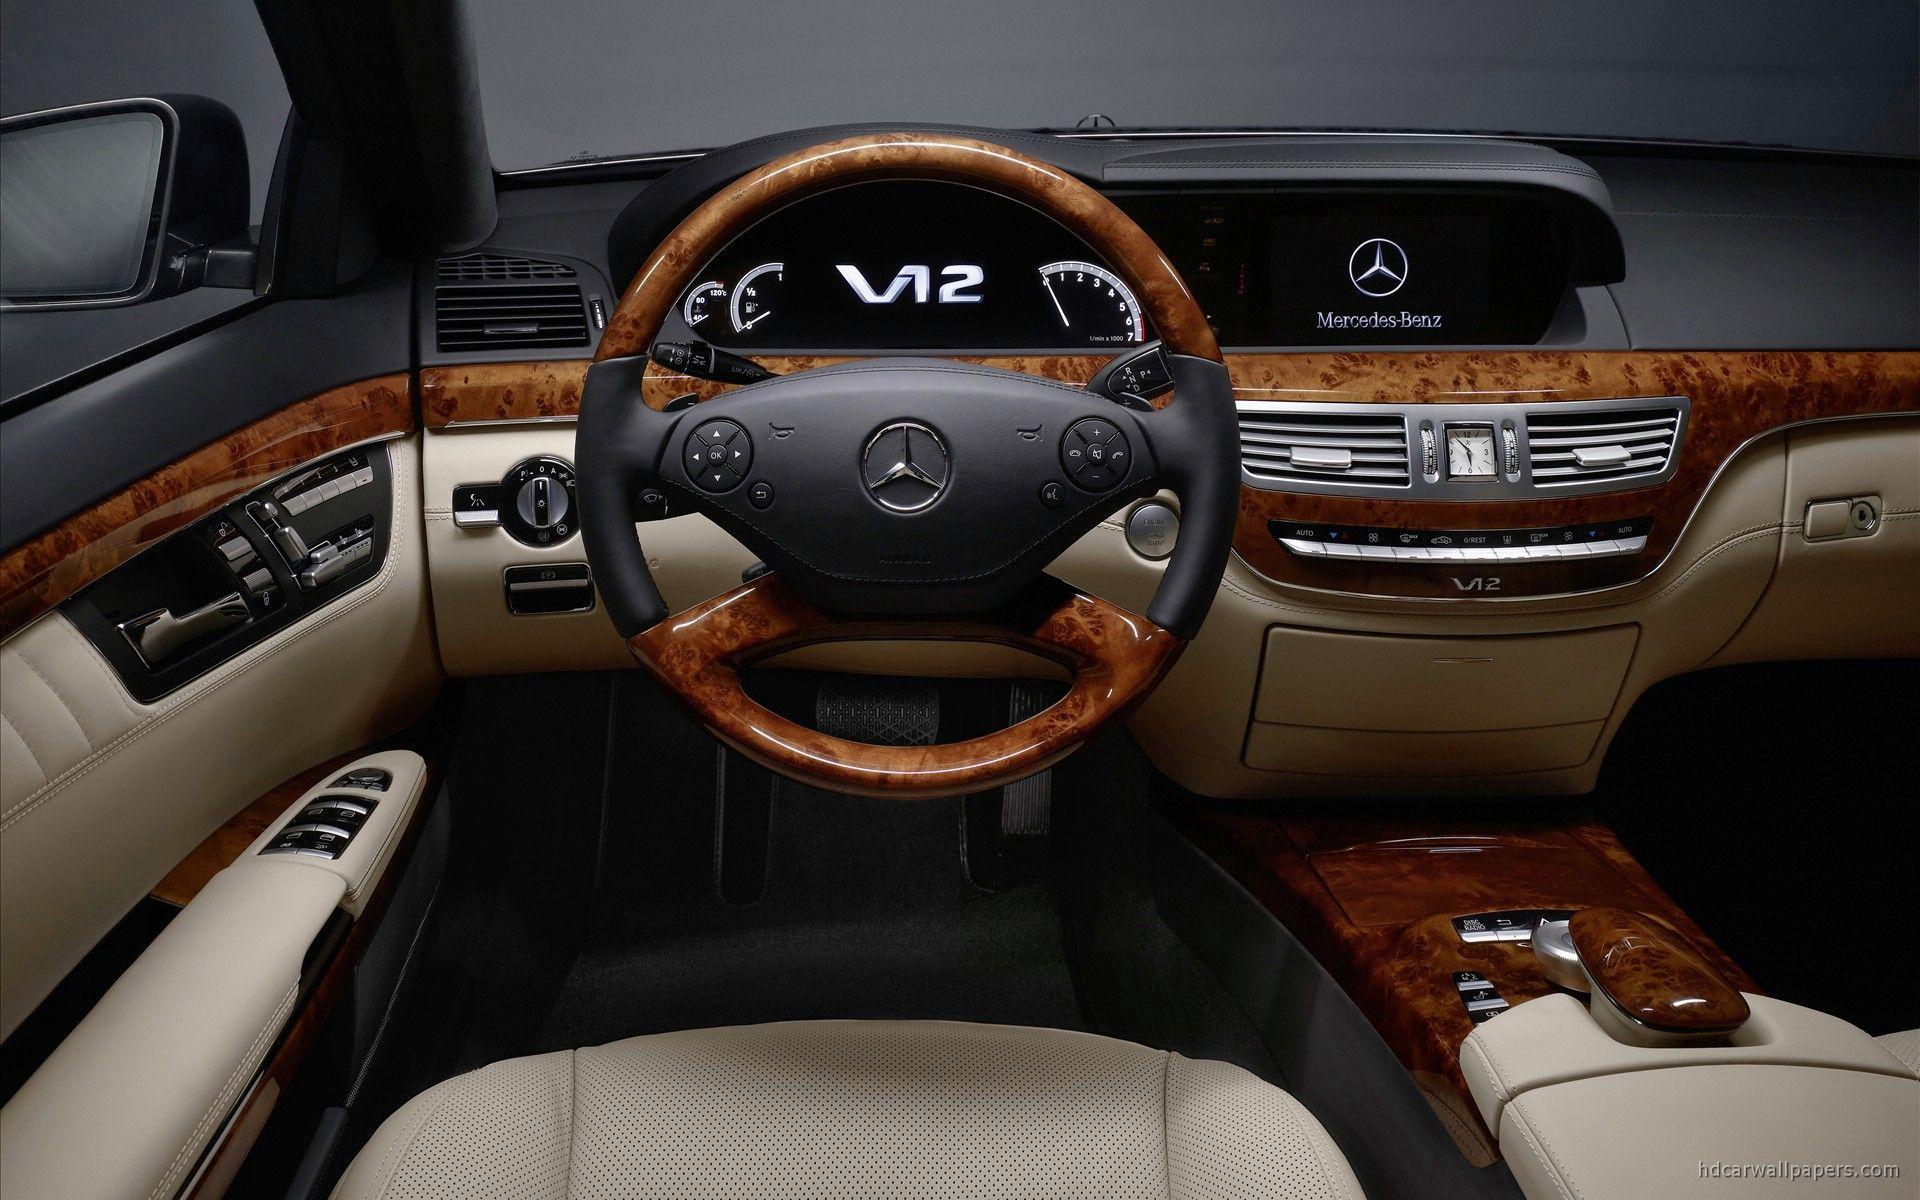 Mercedes Benz S Class Interior Wallpaper. HD Car